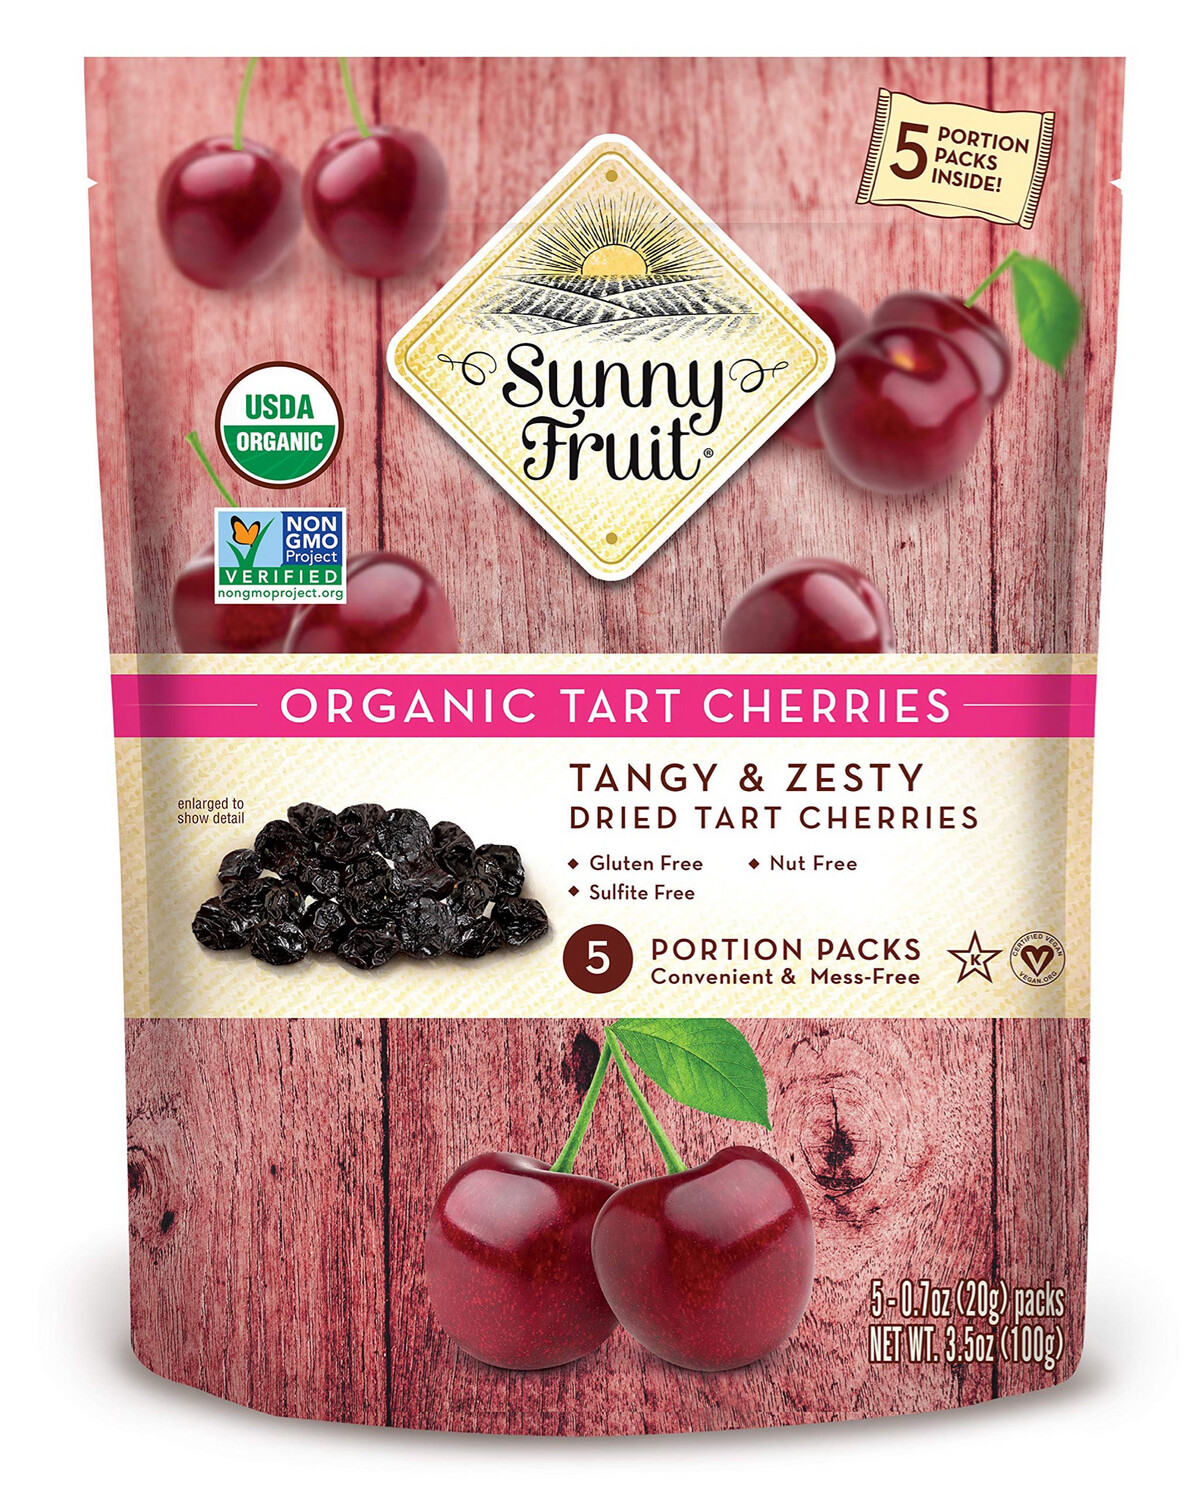 Sunny Fruit Organic Tart Cherries 5 Portion Packs